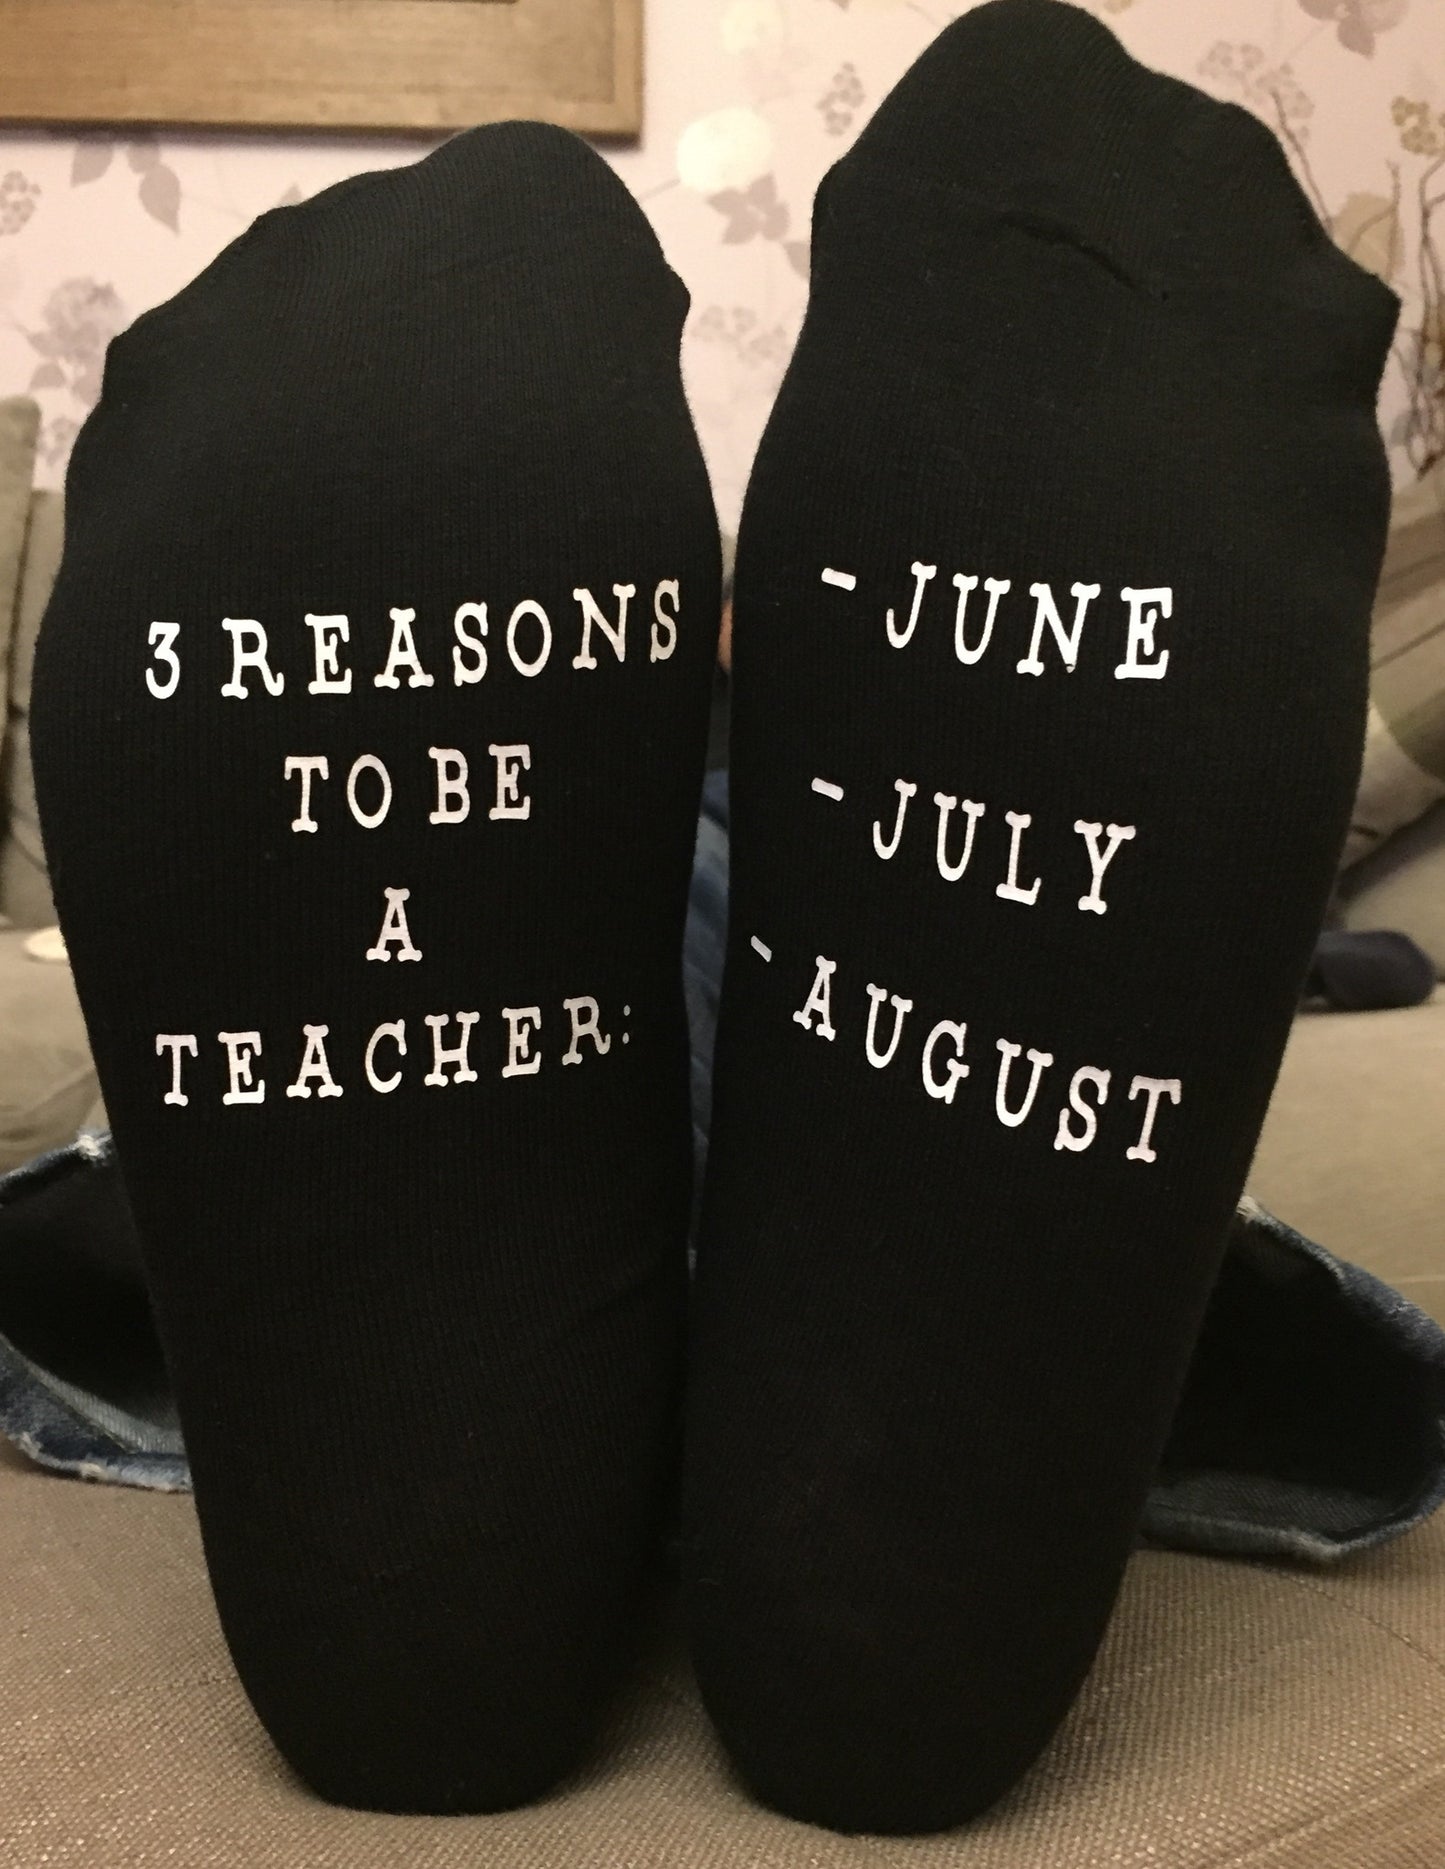 Teacher's Socks - June, July, August